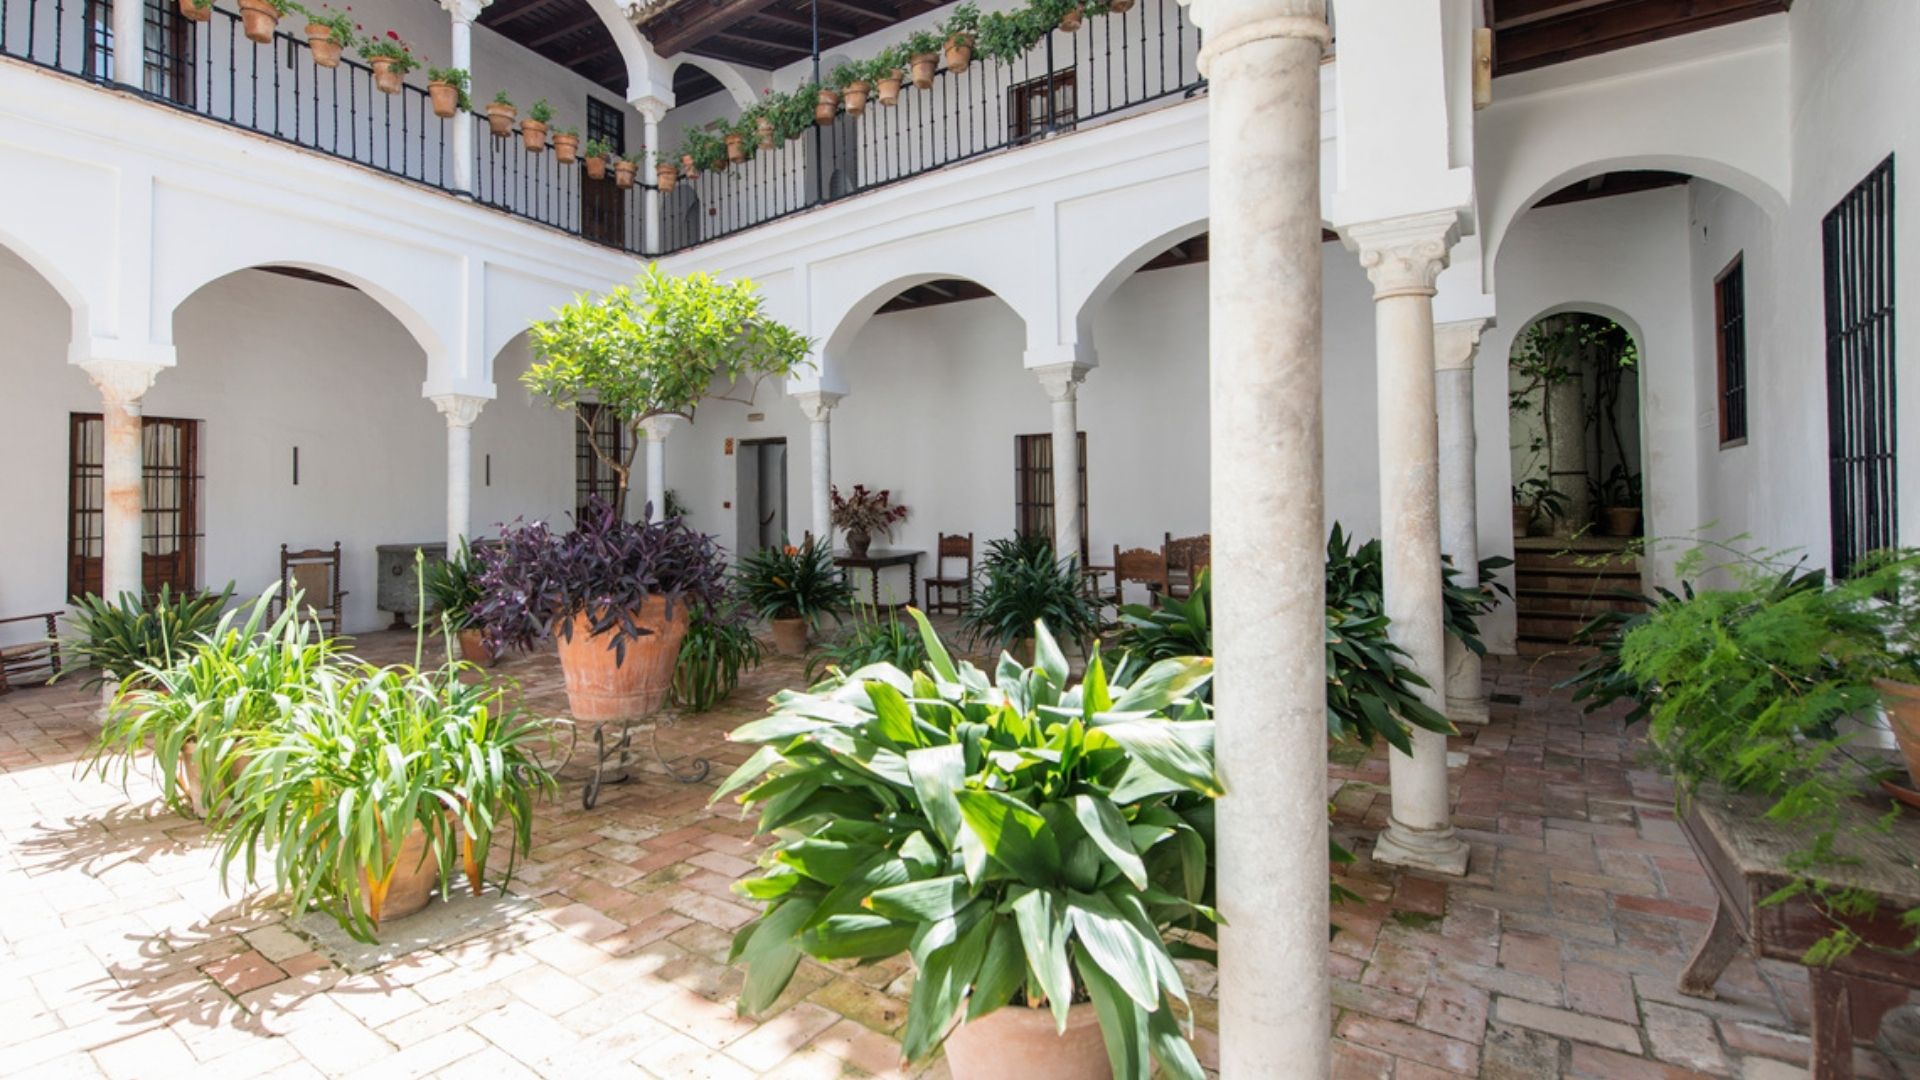 Hotel Las Casas de la Judería Seville - Courtyard